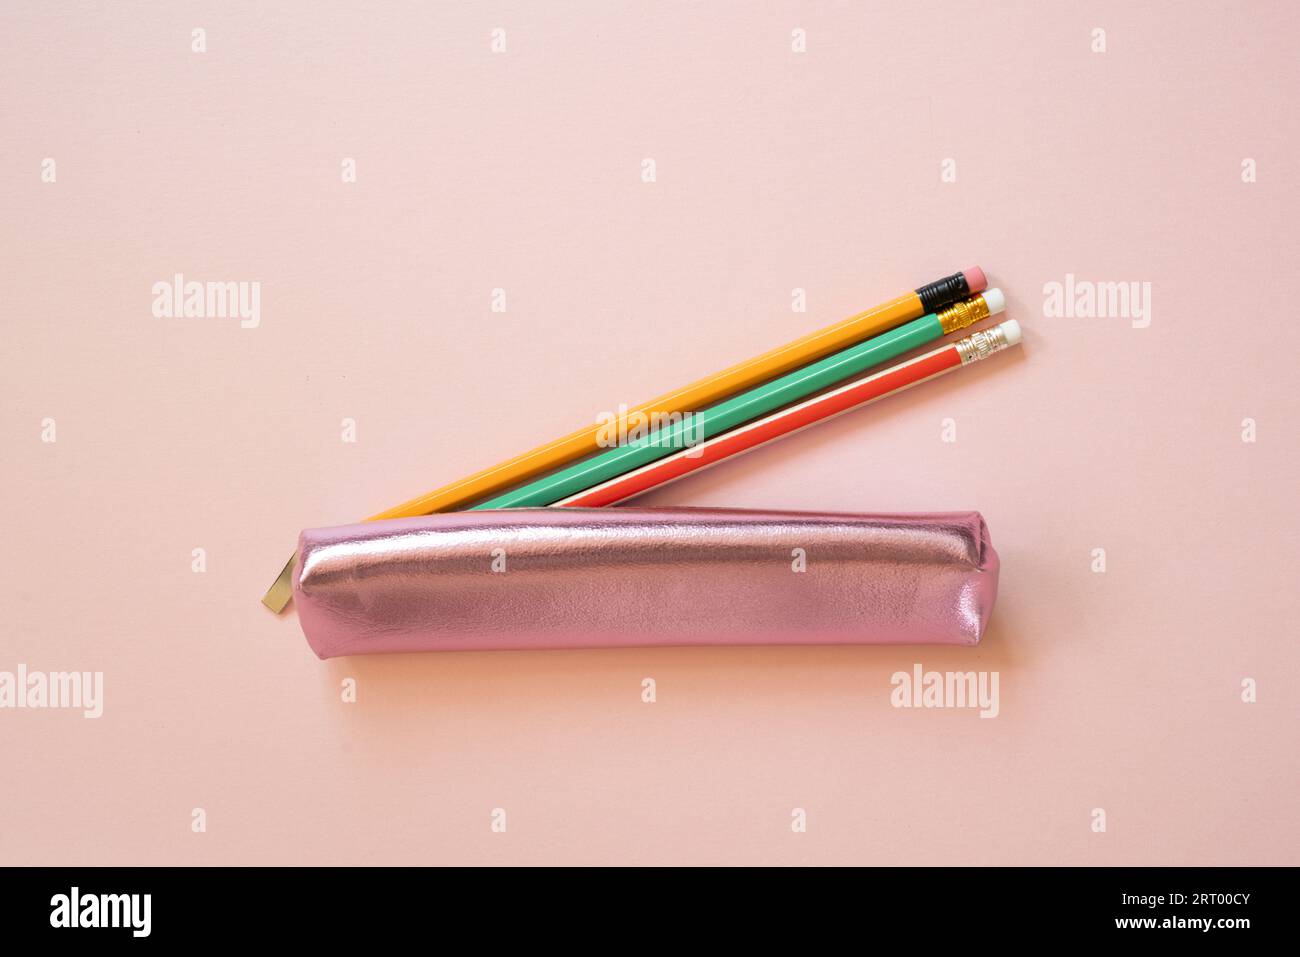 Pinkfarbener Stiftemäppchen mit isoliertem Schreibmaterial auf rosafarbenem Hintergrund. Draufsicht Stockfoto